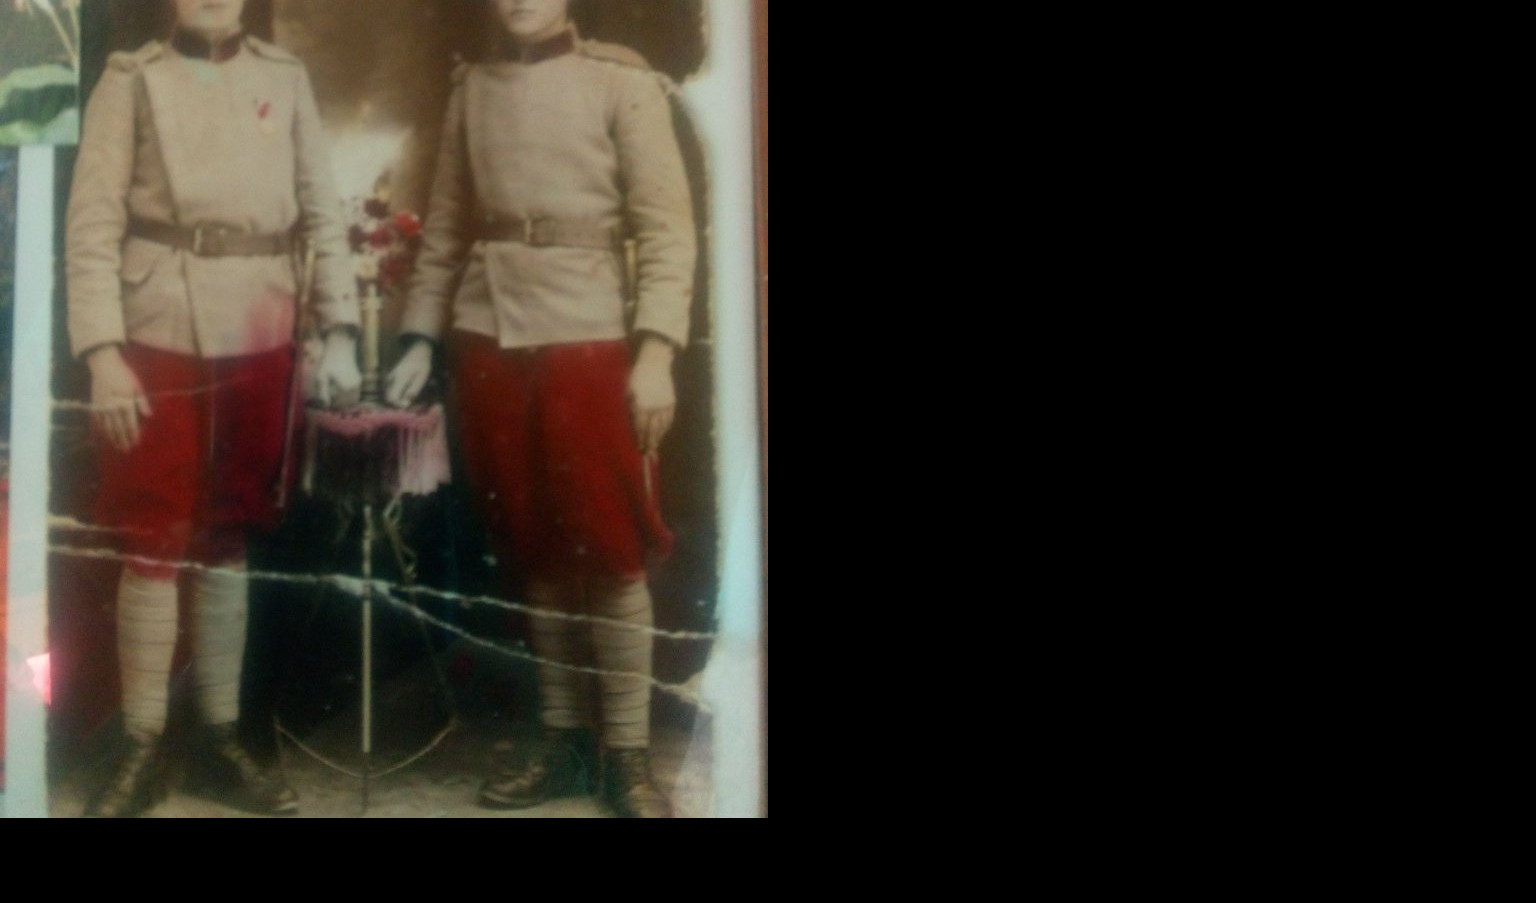 (FOTO) POŽUTELA SLIKA ZLATA VREDNA! Sreten Matić vlasnik je jedne od najstarijih fotografija u boji u svom kraju!